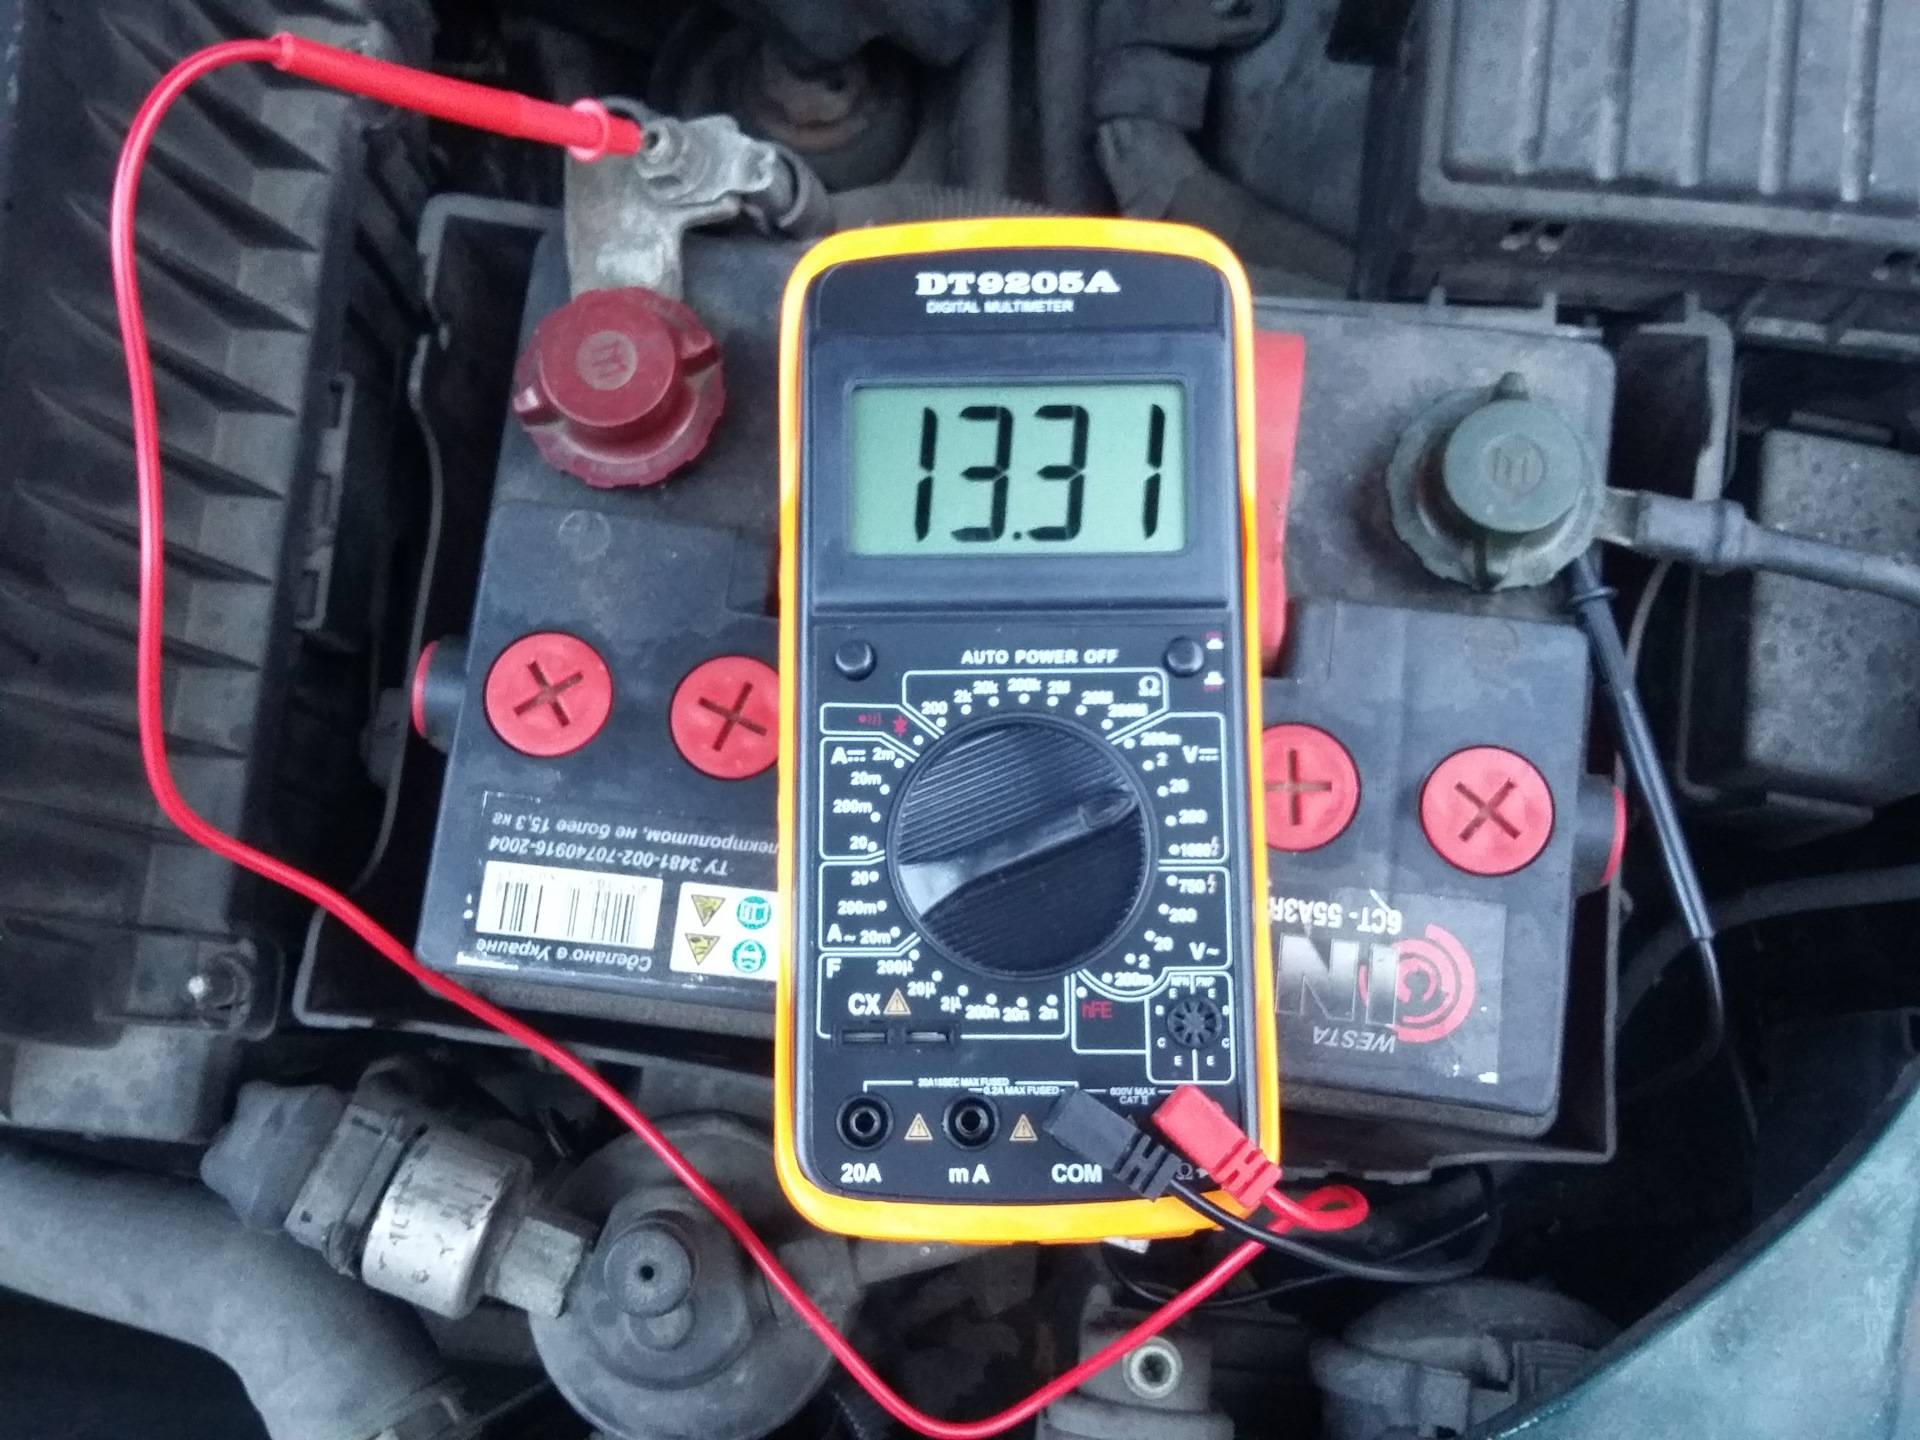 Сколько стоит утечку. Замерить ток утечки аккумулятора автомобиля. Проверить утечку тока на автомобиле мультиметром. Мерседес w211 утечка тока 2 Ампера. Как измерить утечку аккумулятора мультиметром.